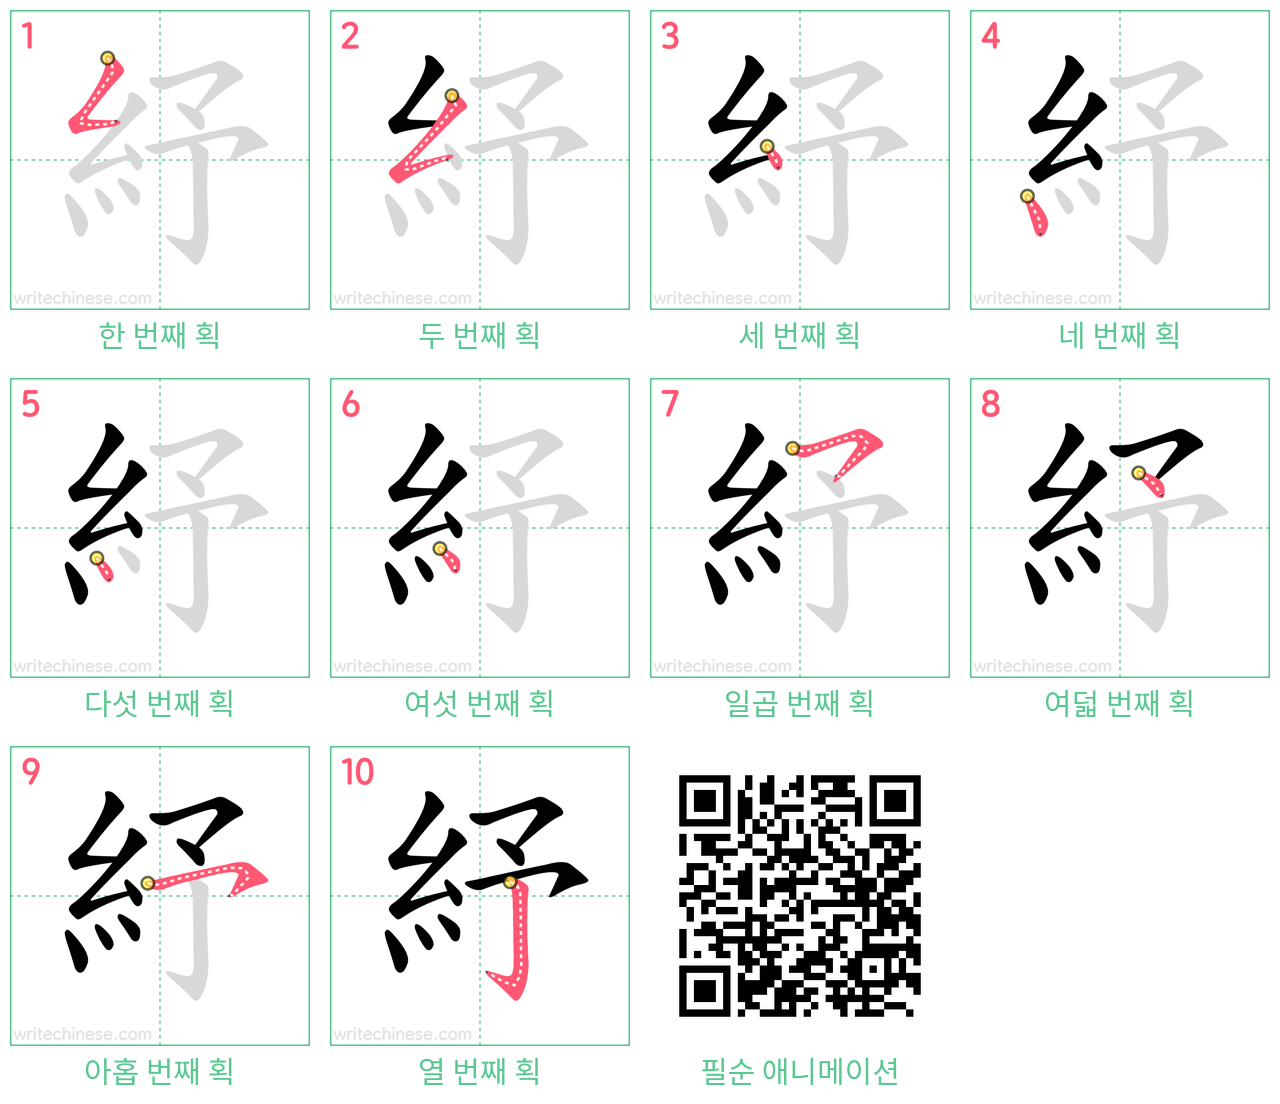 紓 step-by-step stroke order diagrams